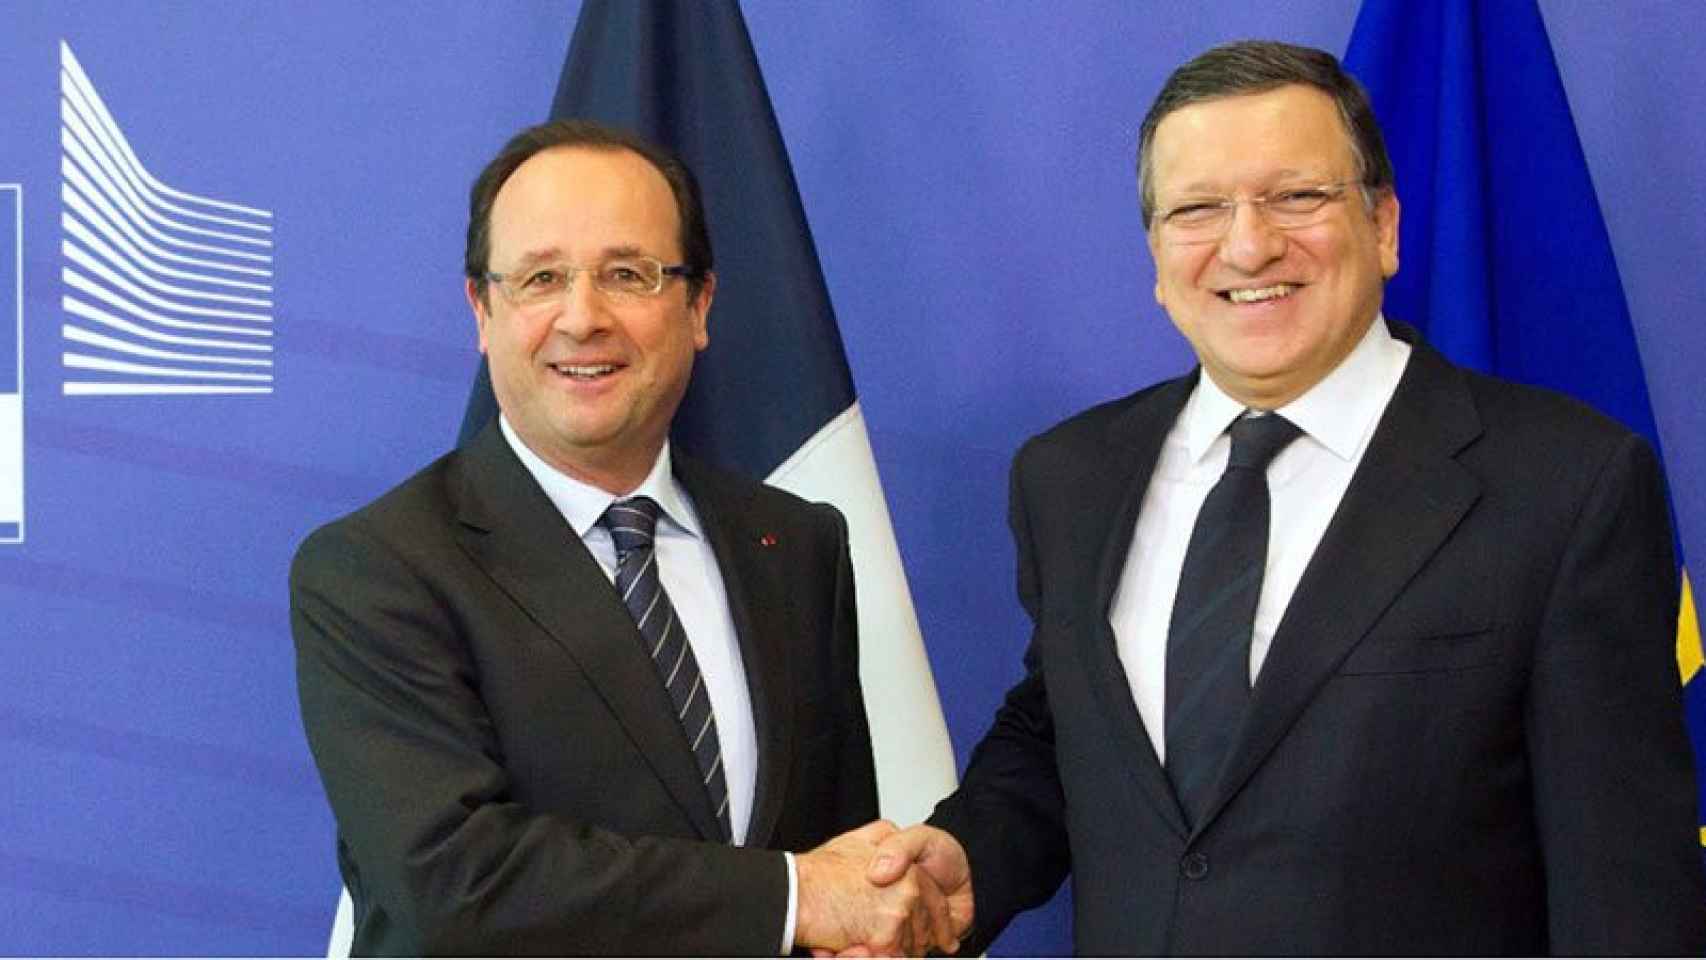 François Hollande y José Manuel Durao Barroso en una imagen de mayo de 2013.